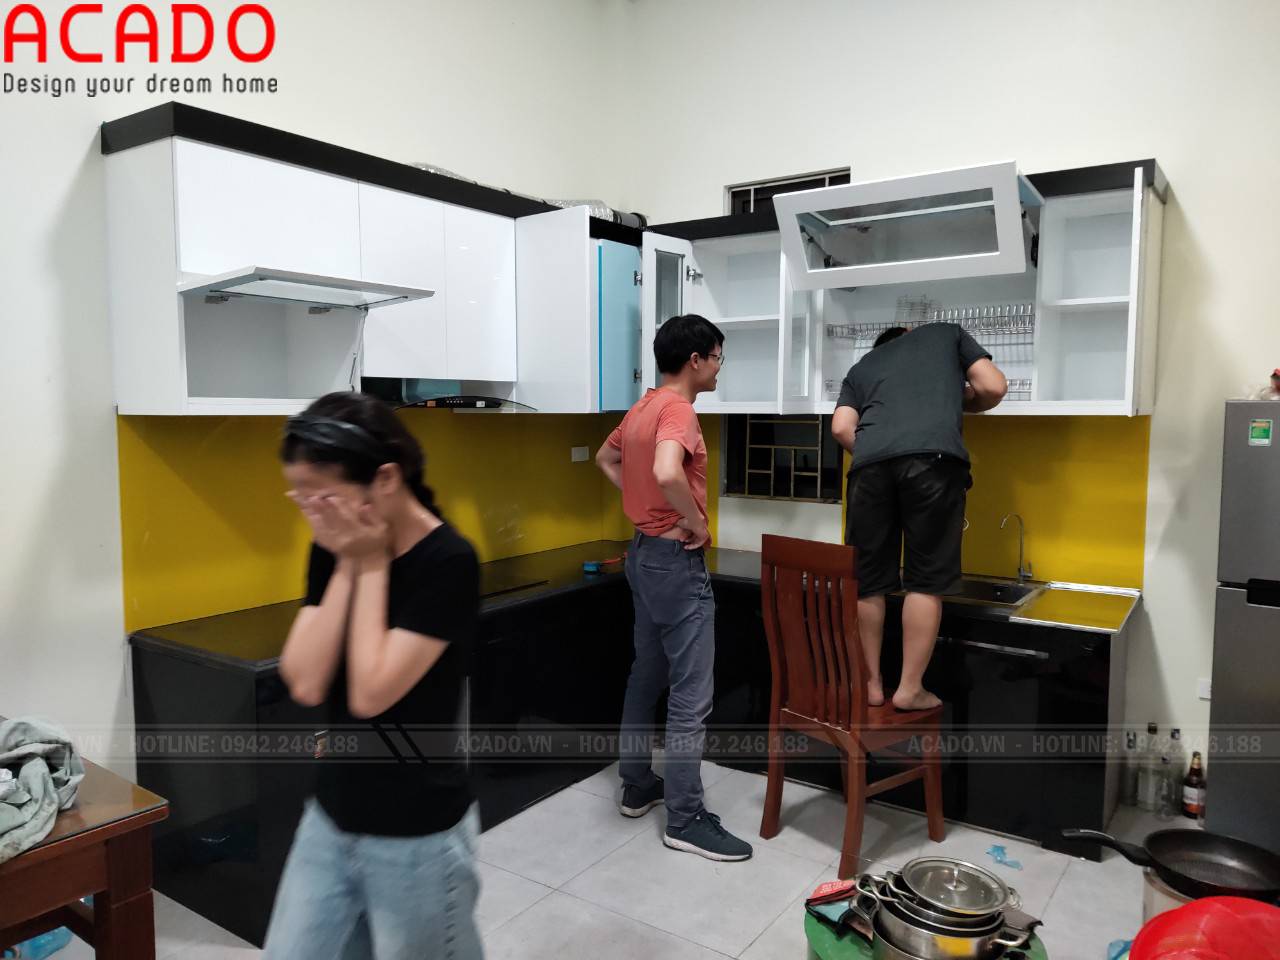 Thợ thi công đang lắp đặt tủ bếp tại gia đình anh Thành